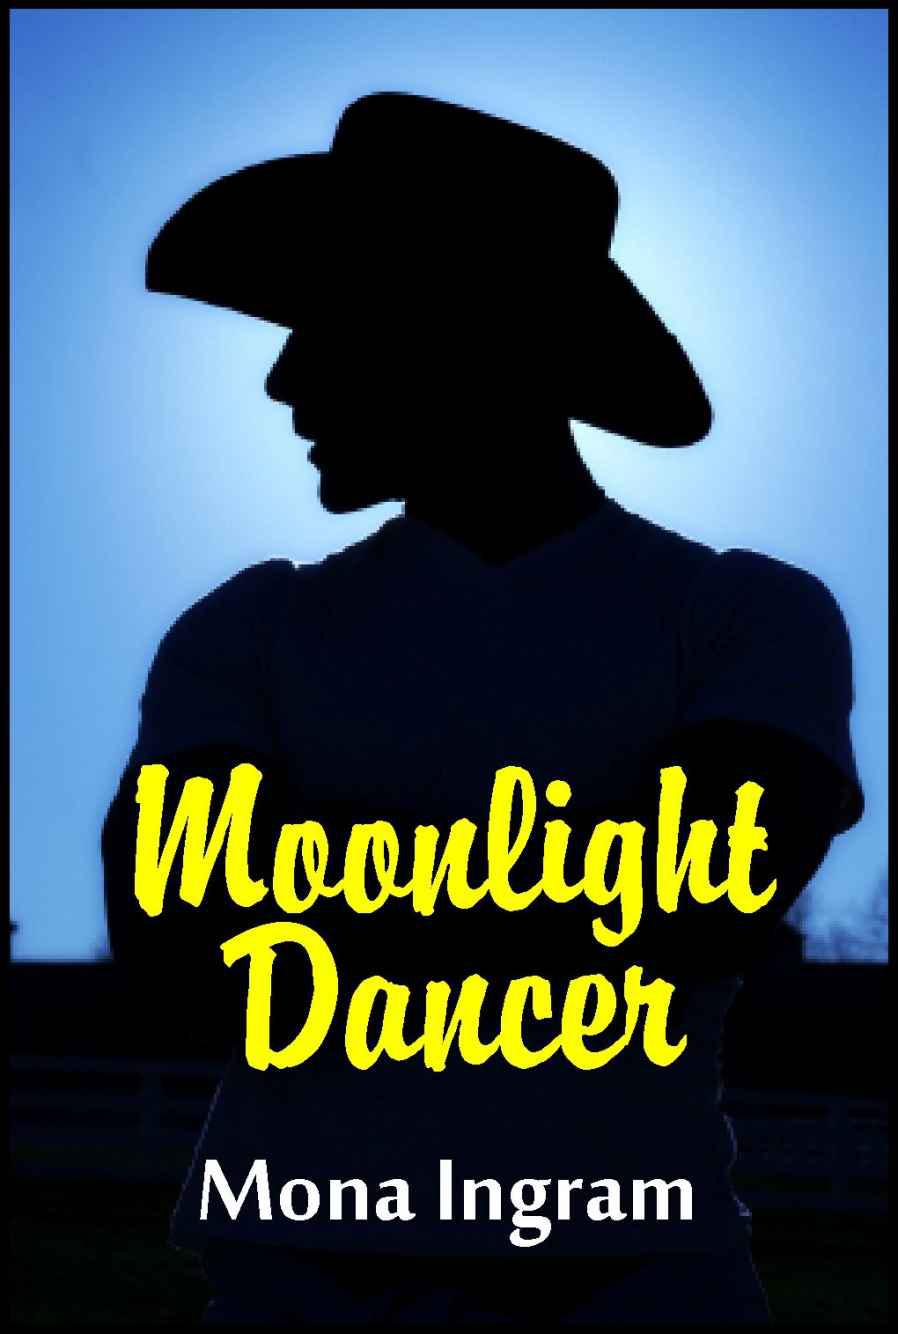 Moonlight Dancer by Mona Ingram